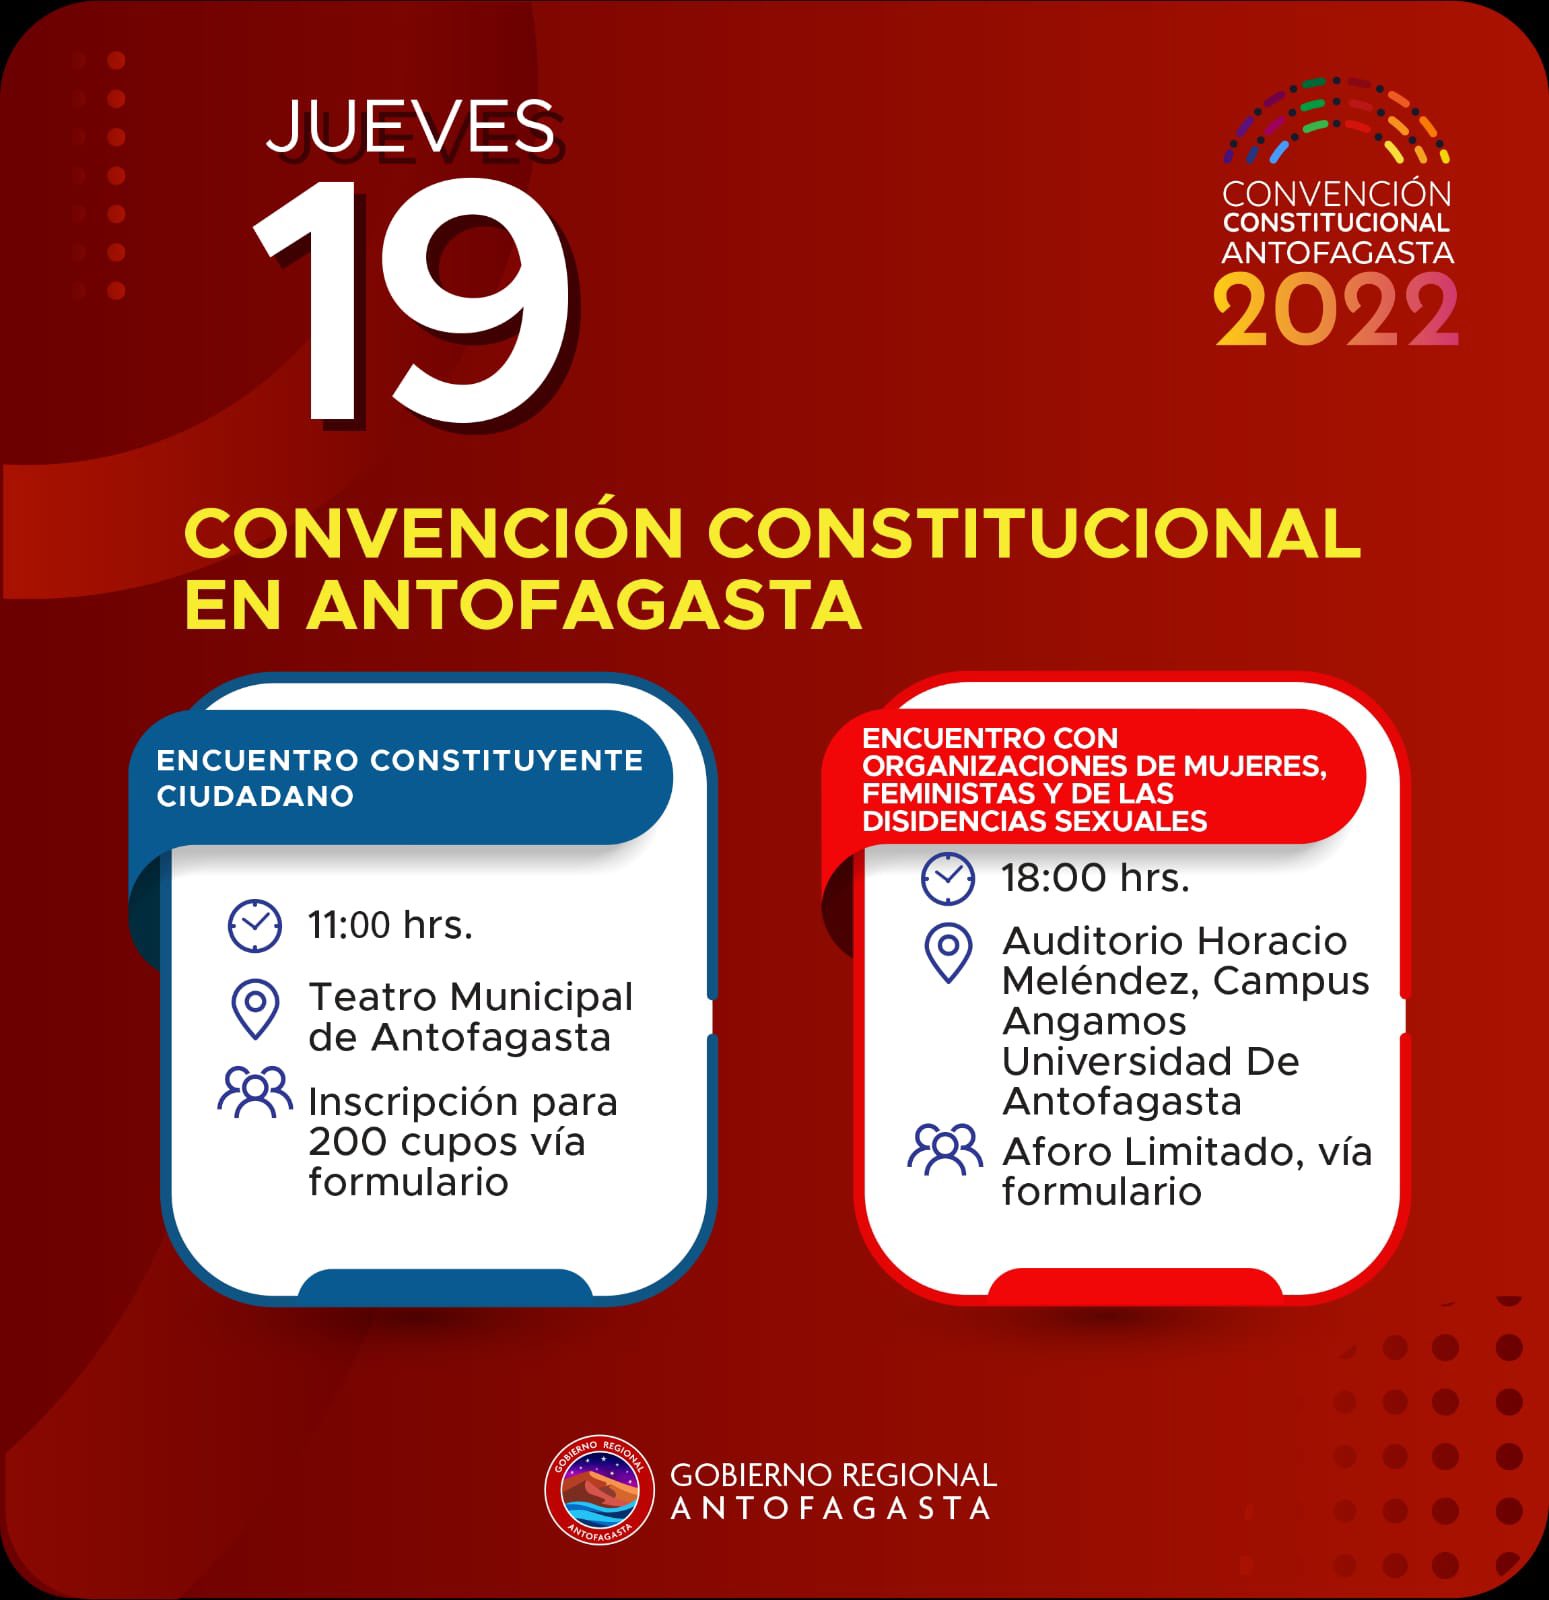 Gobernación Regional de Antofagasta y Universidad de Antofagasta invitan a “Encuentro de Mujeres y Disidencias hacia la nueva Constitución”